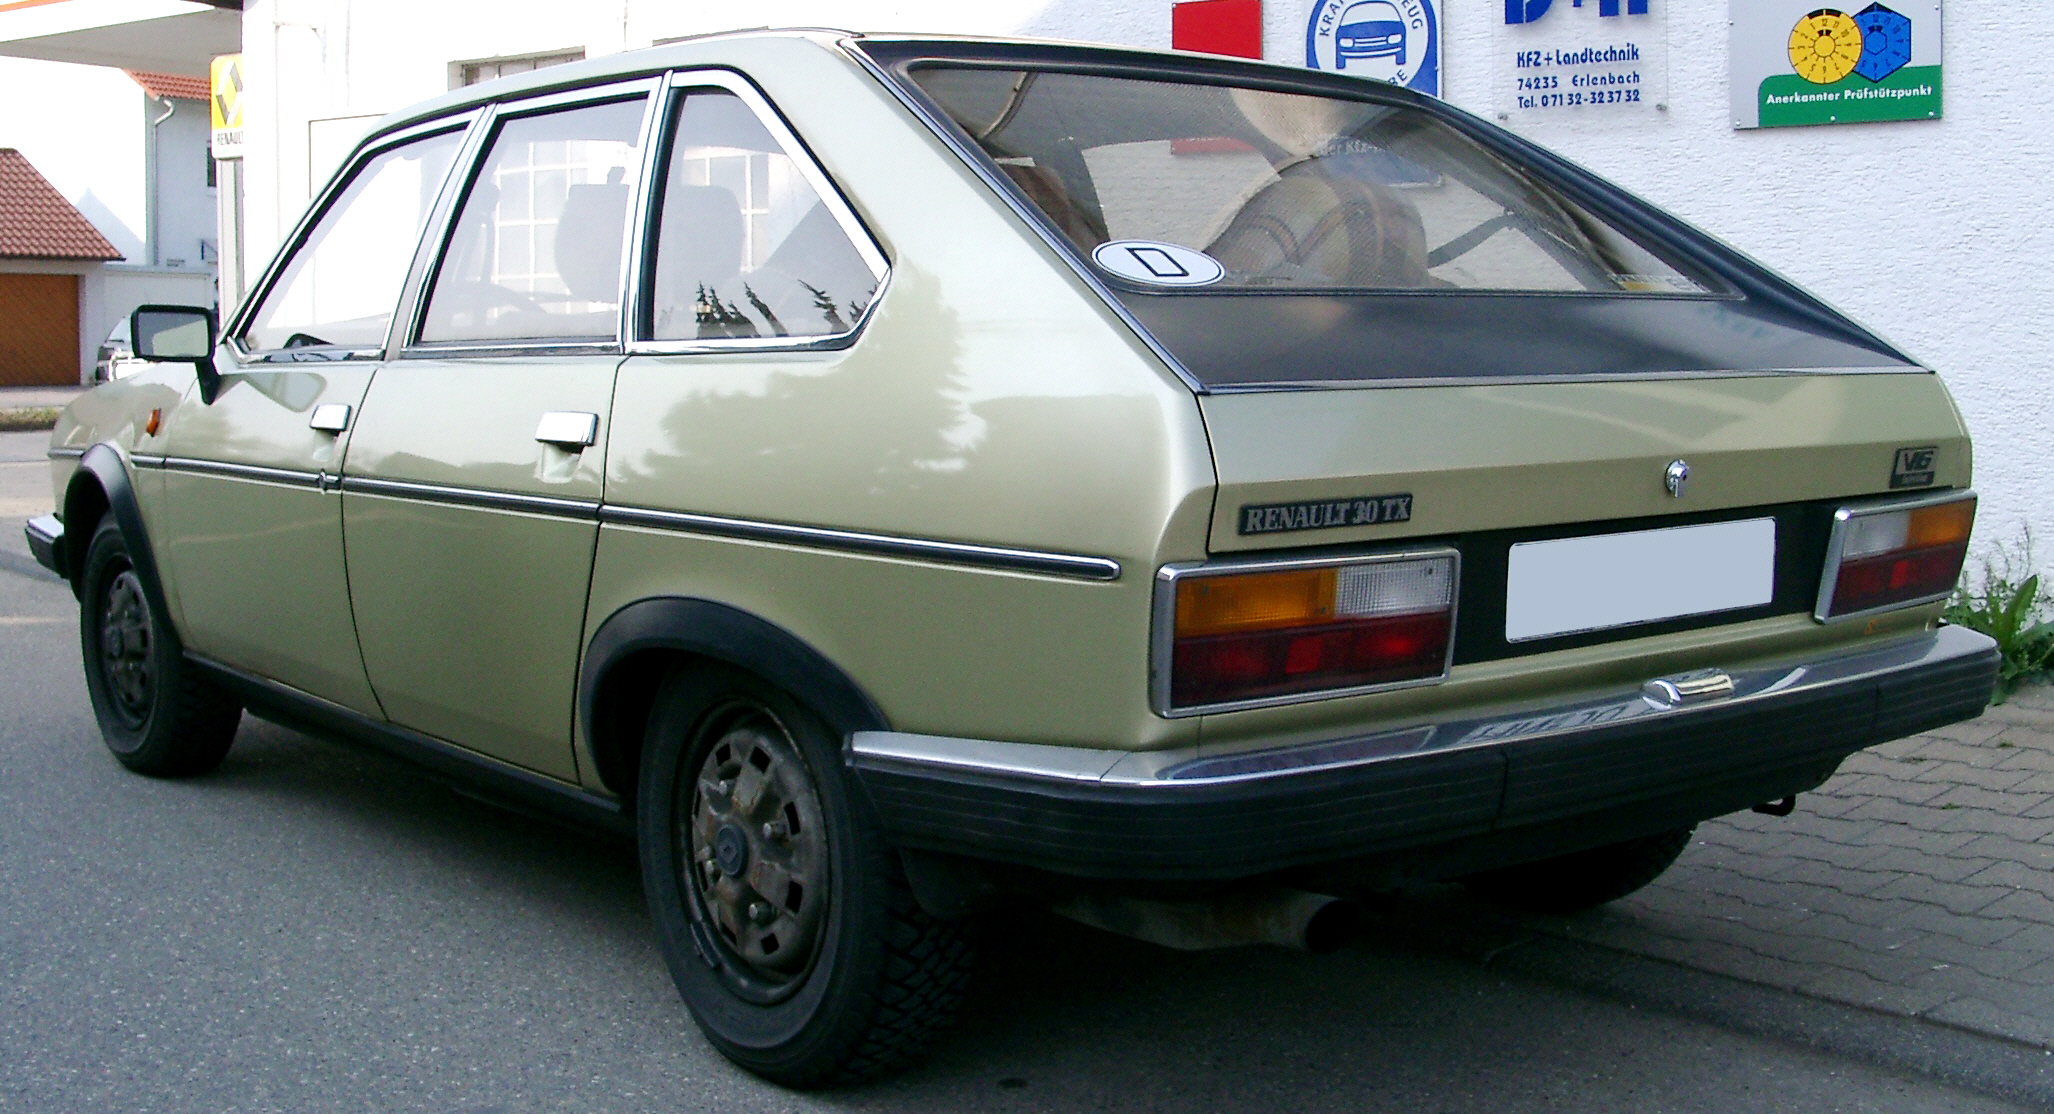 Renault 30. Renault 30 1975. Renault 30 TS. Renault 20/30.